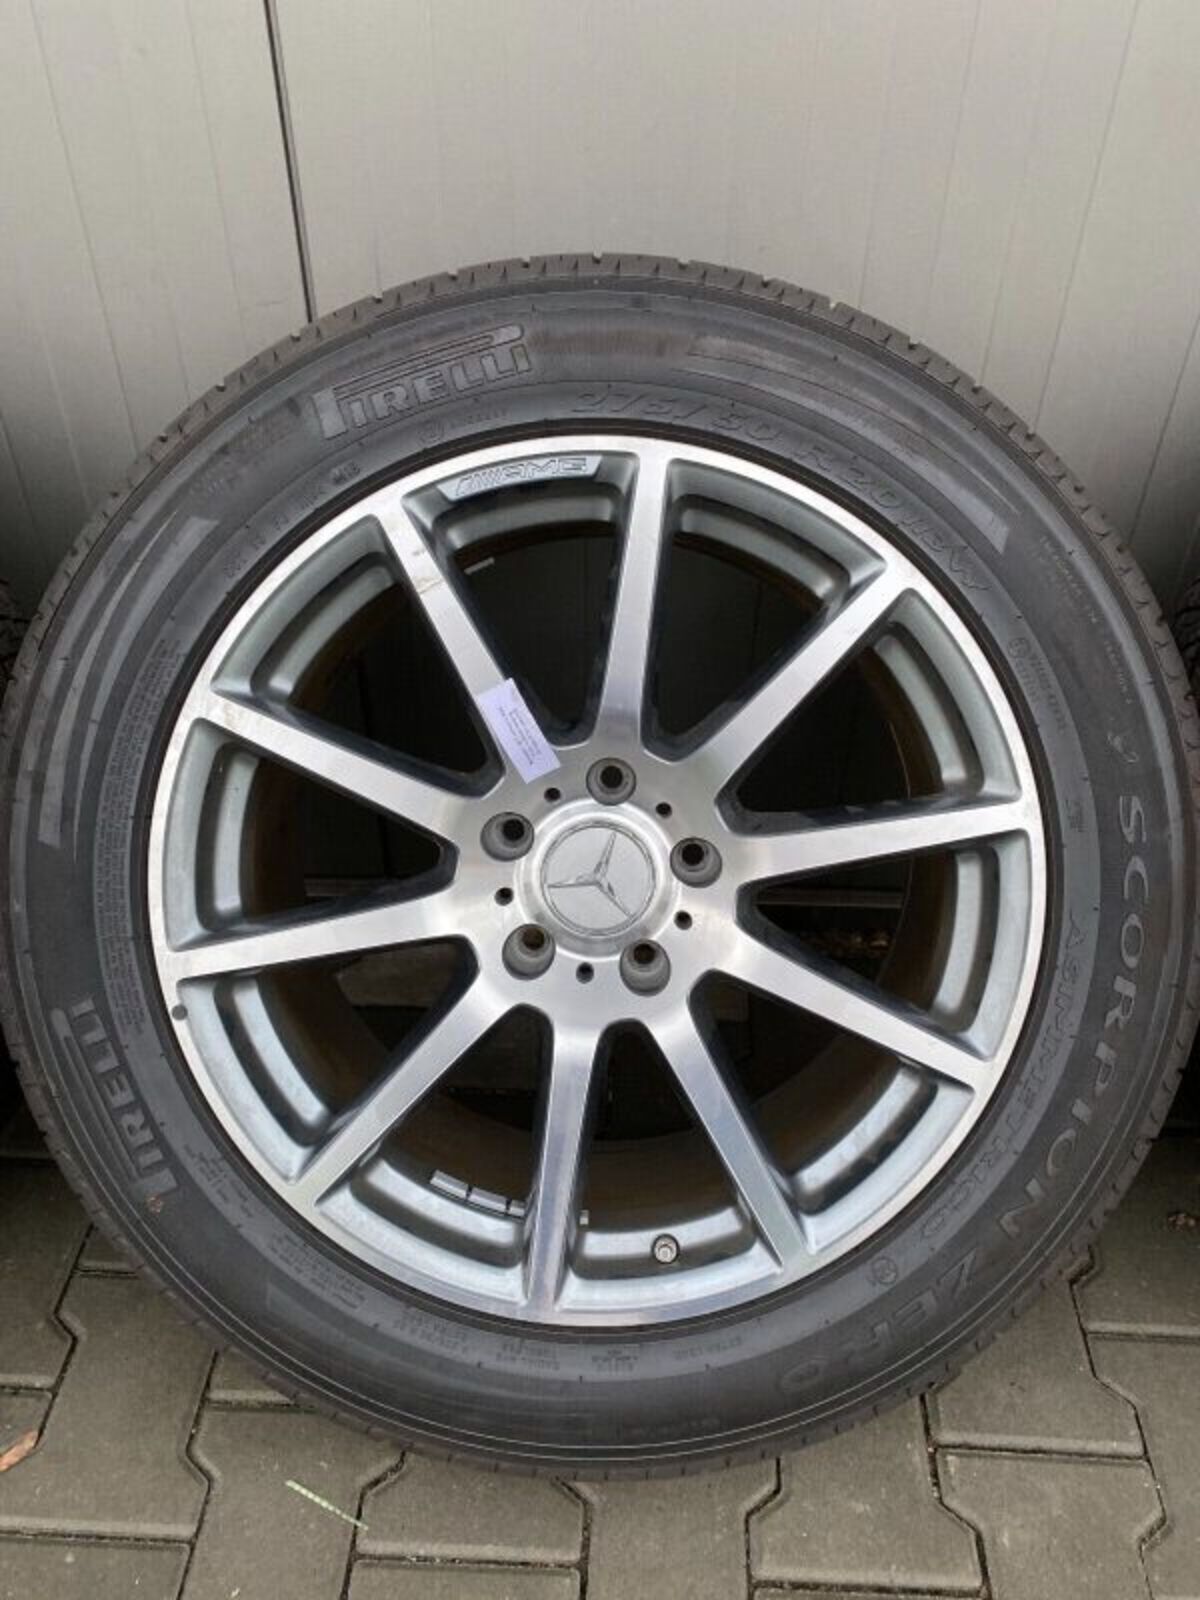 MERCEDES G63 G KLASSE Rader satz wheels set 20 inch 354830089339 7